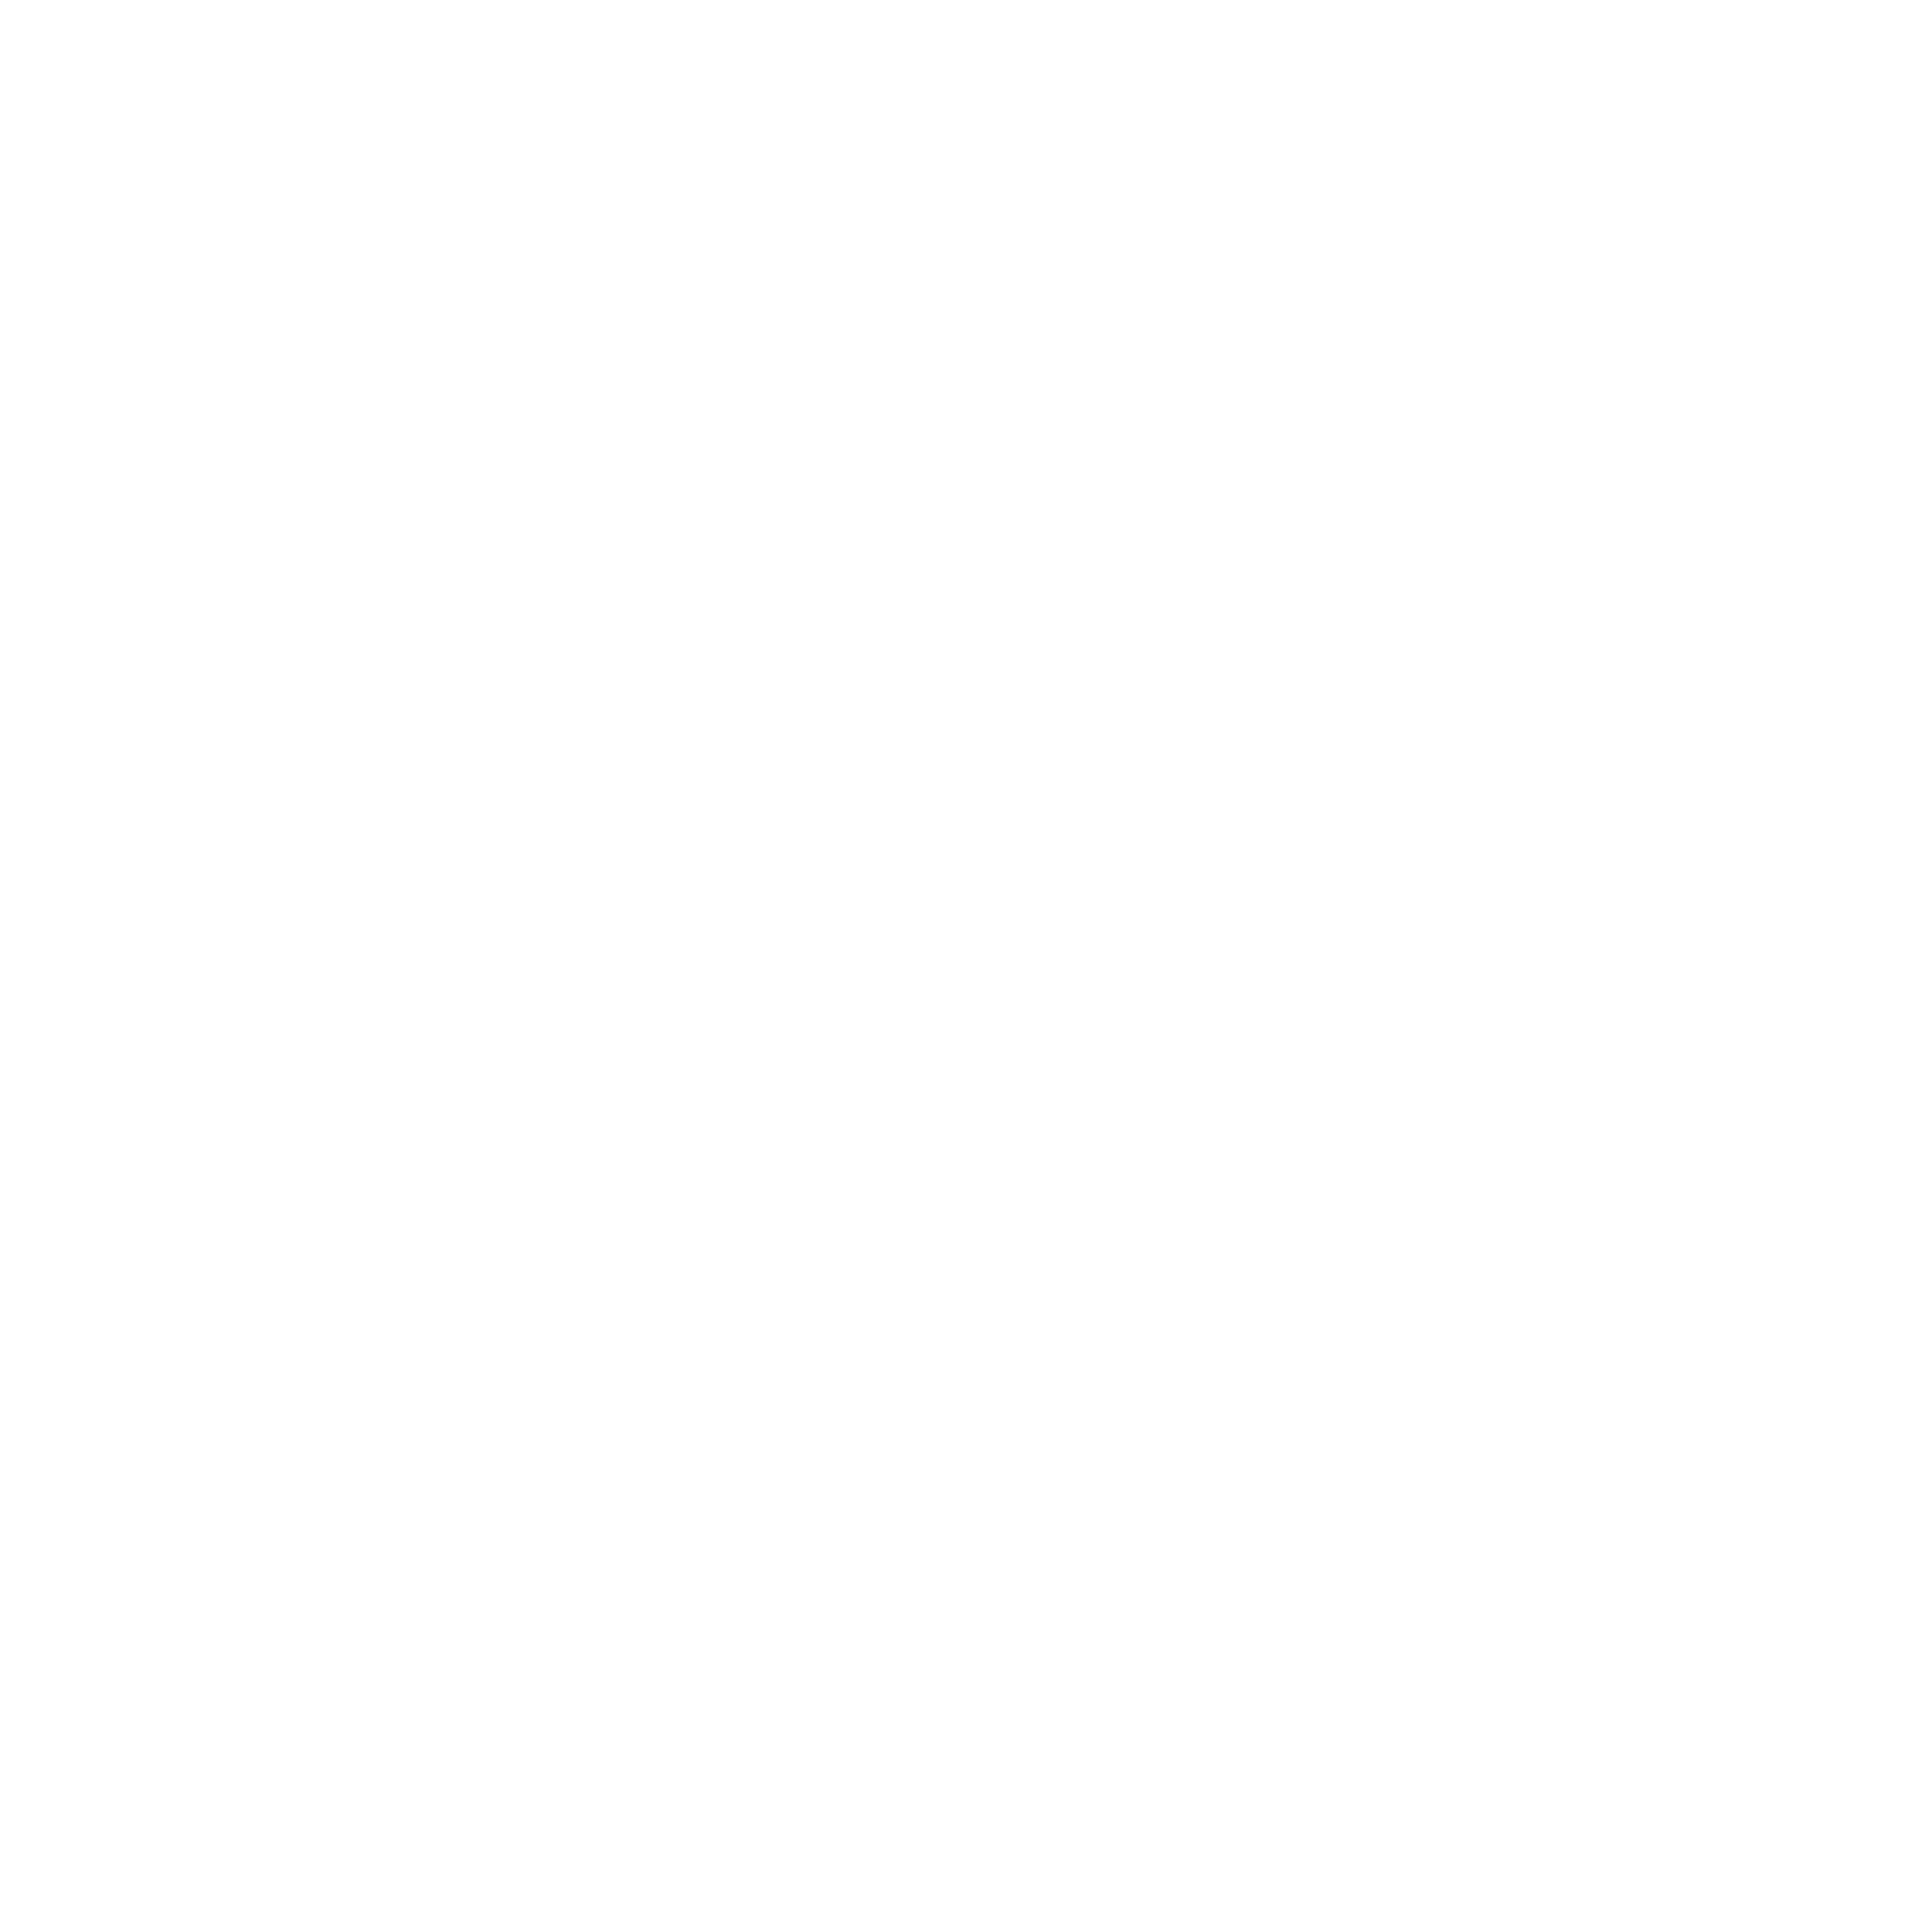 hitachi-2-logo-black-and-white-1